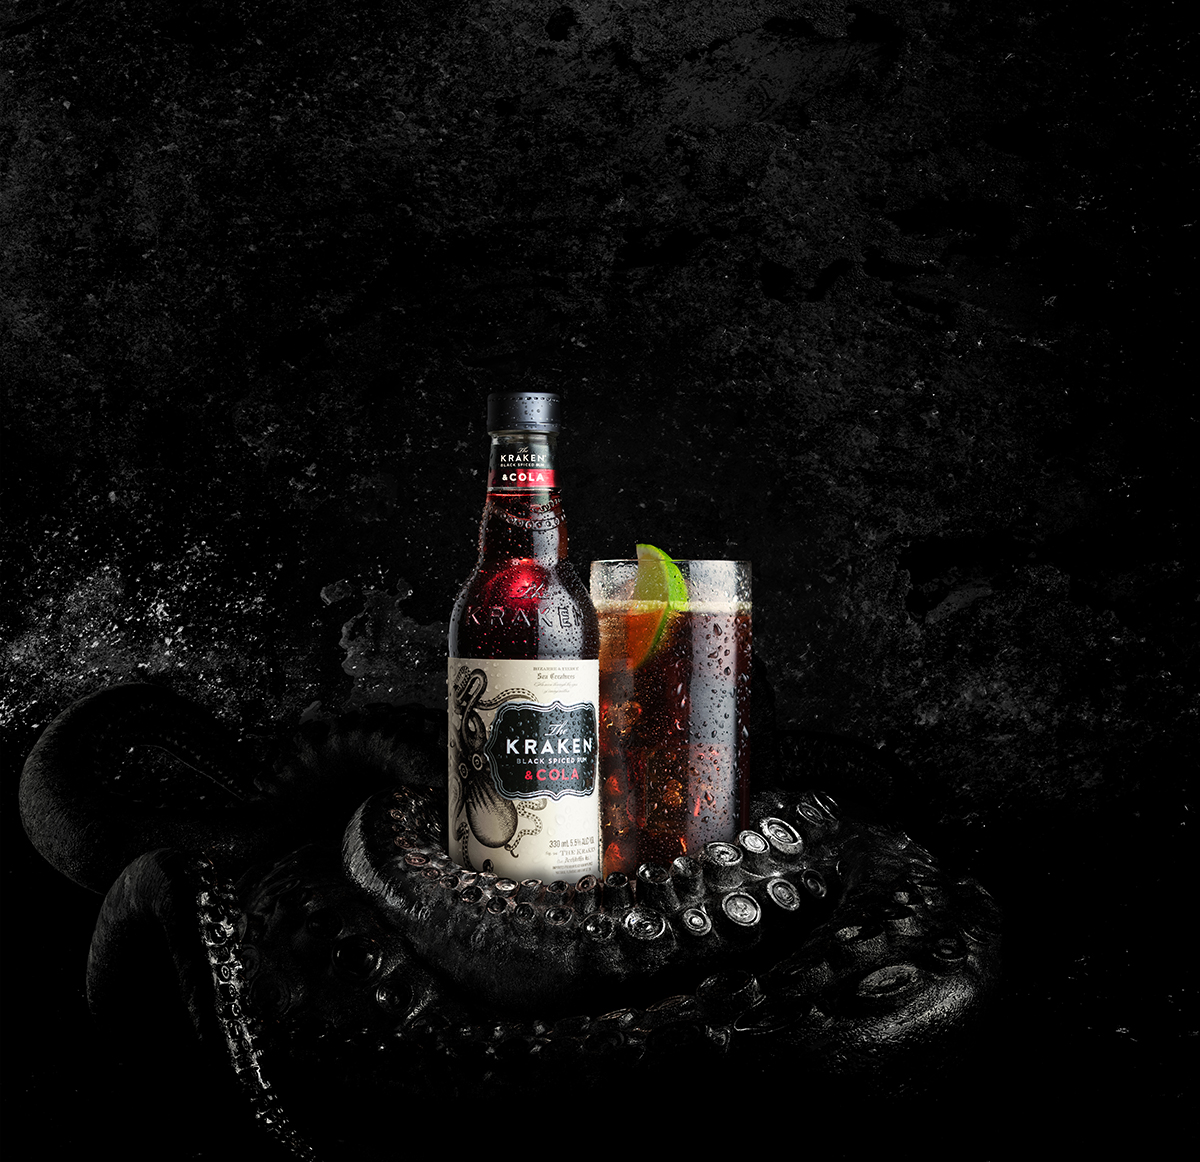 The Kraken Black Spiced Rum. Kraken & Dry. Image supplied.